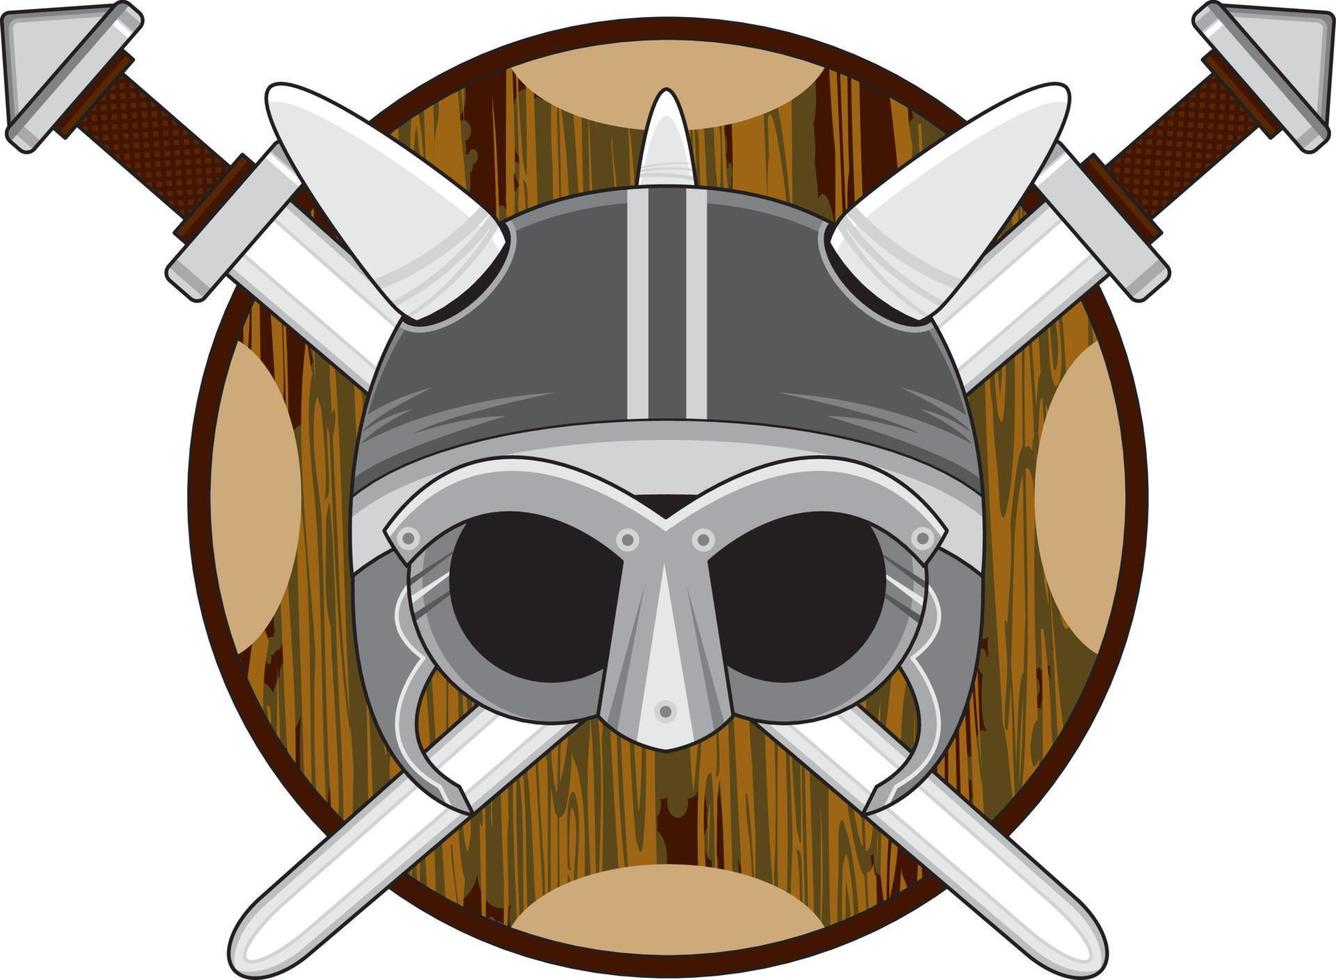 Viking Helmet on Shield with Crossed Swords vector